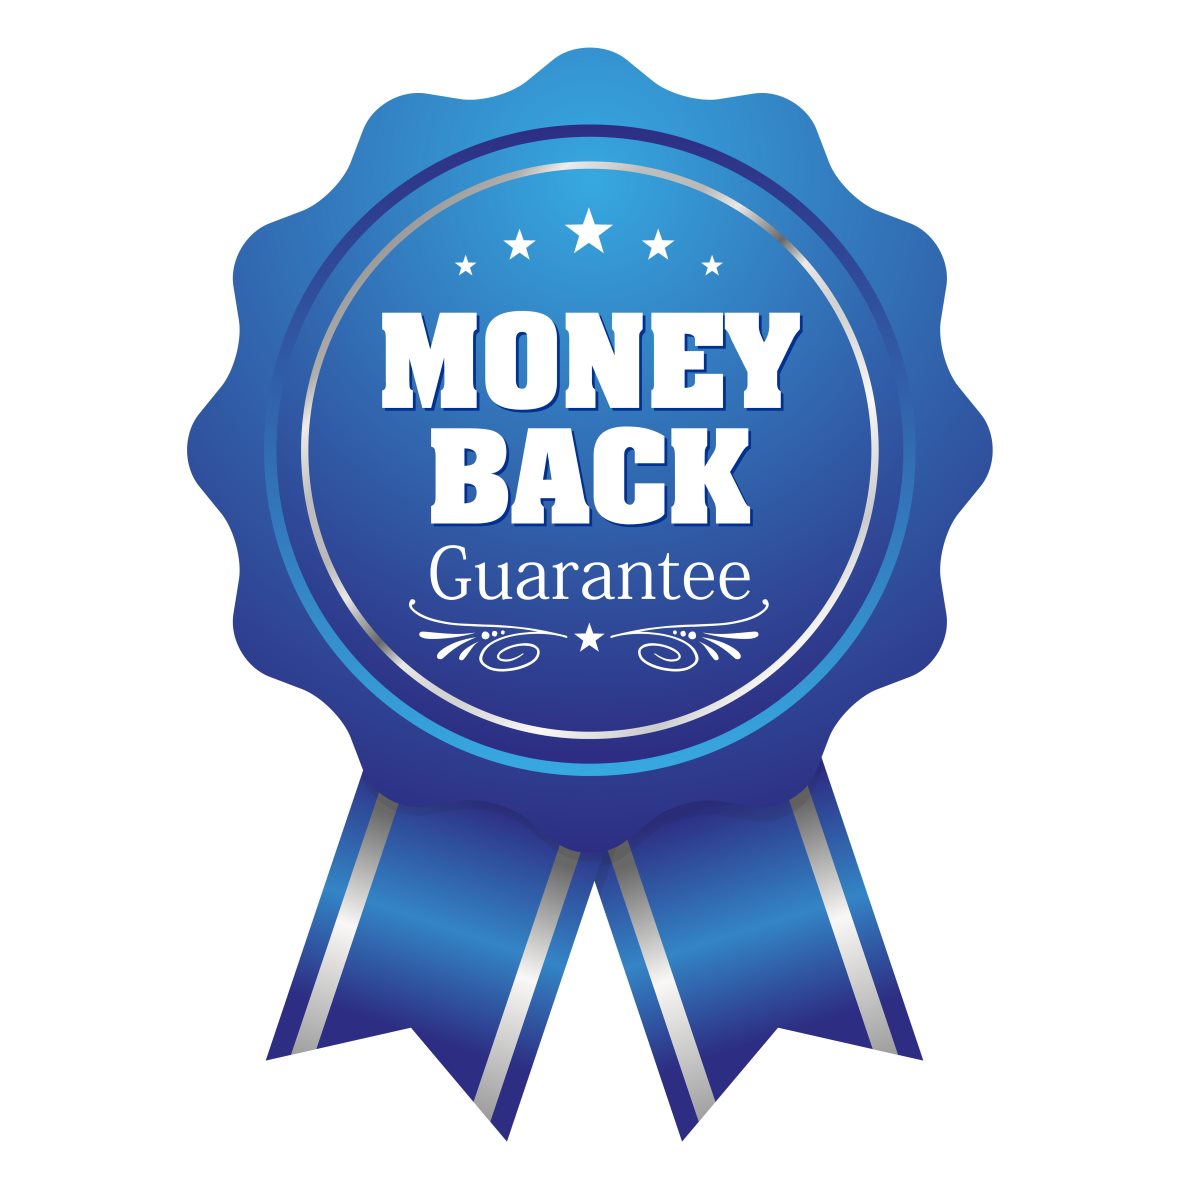 100% mony back guarantee